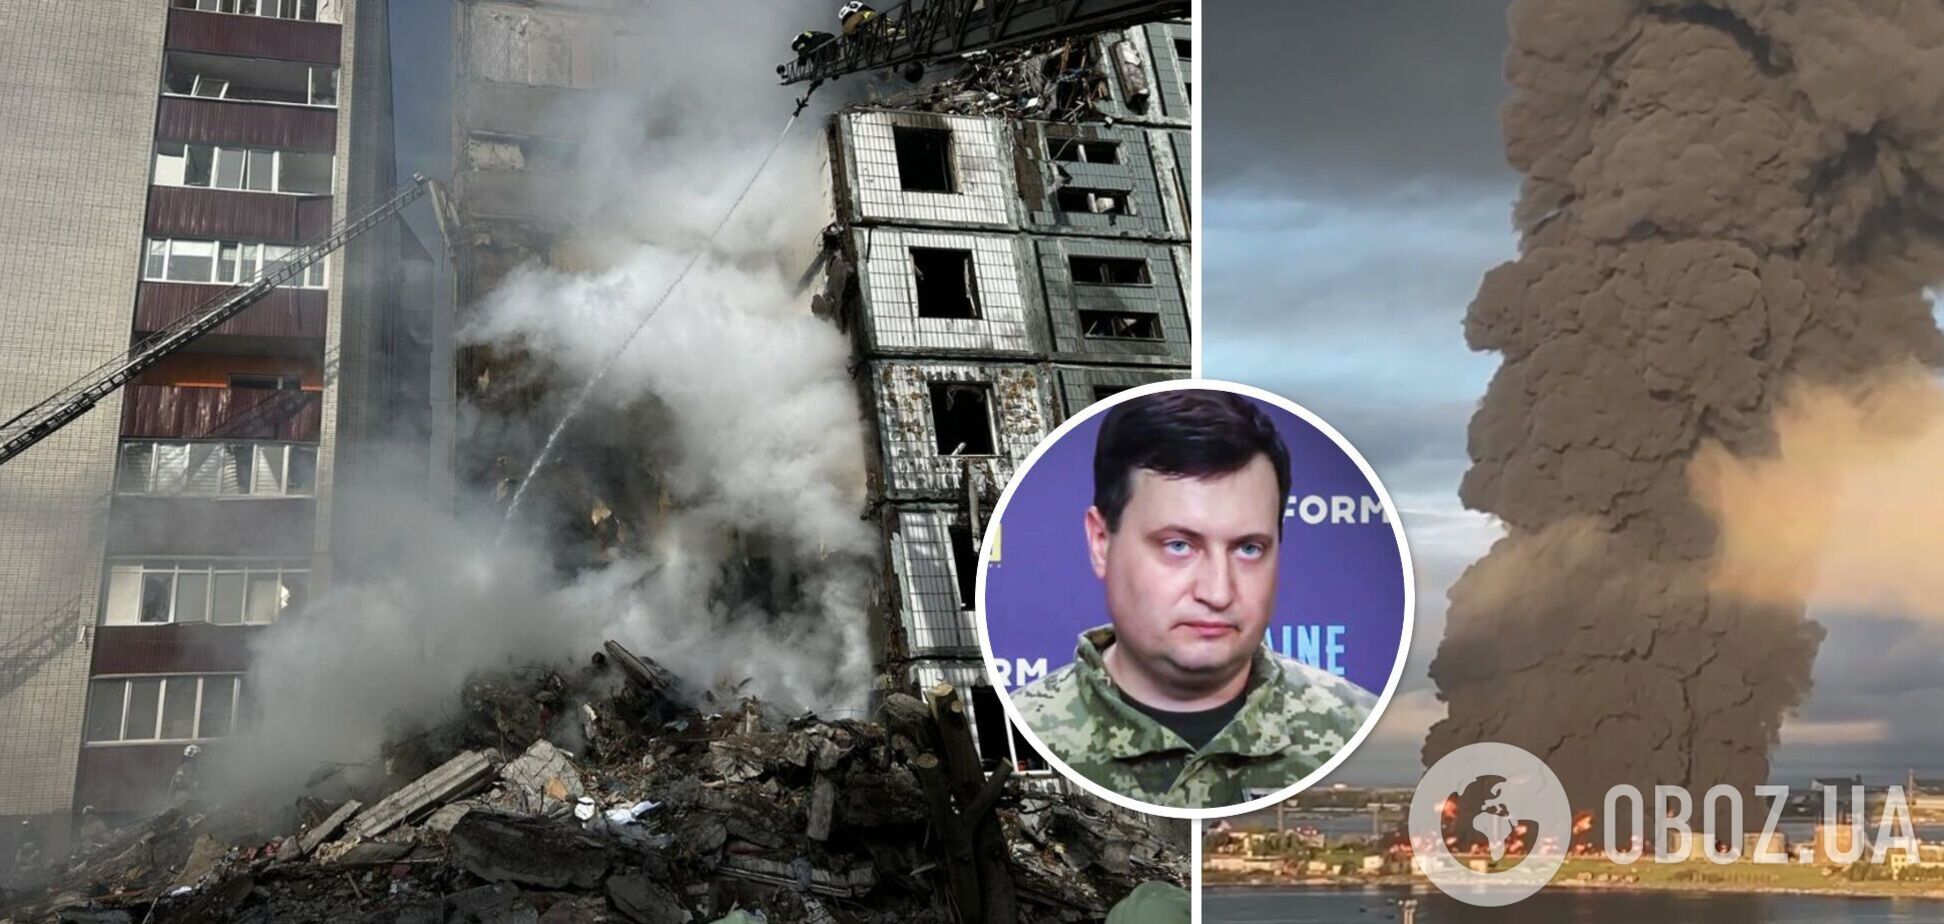 Андрей Юсов высказался о взрывах и пожаре в Севастополе